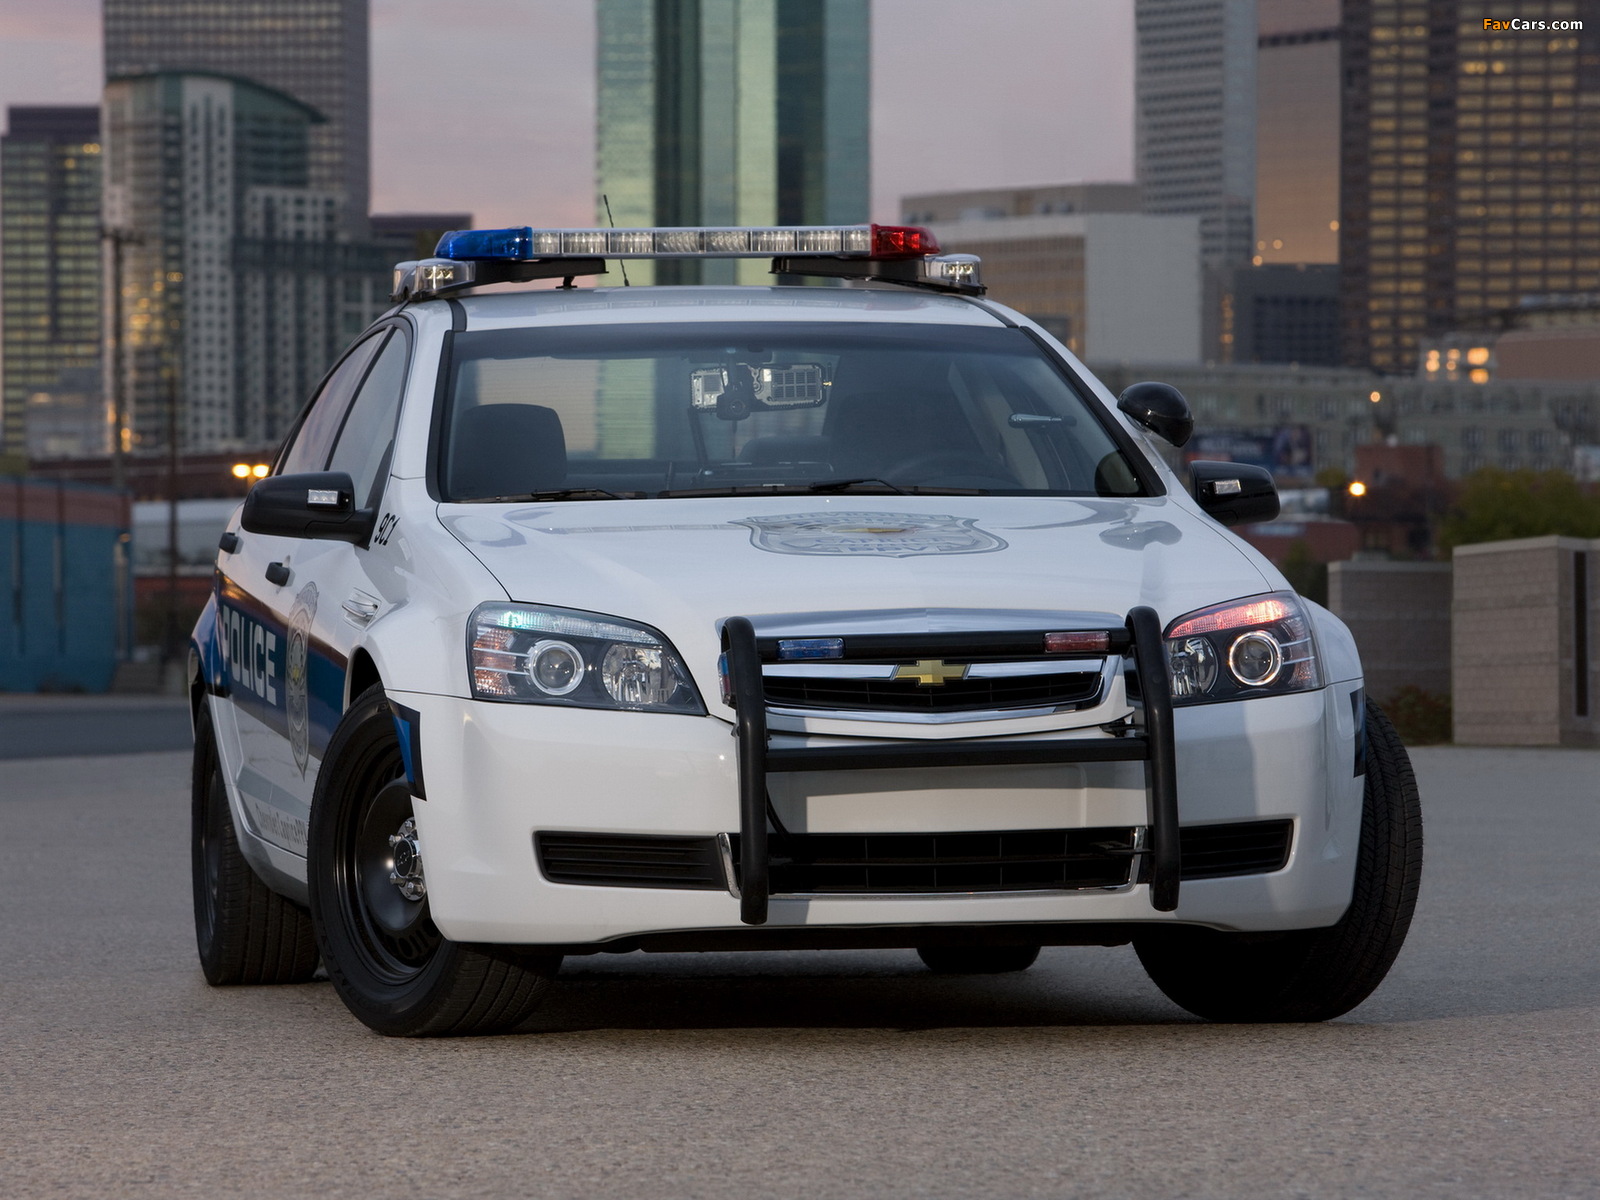 Chevrolet Caprice Police Patrol Vehicle 2010 photos (1600 x 1200)